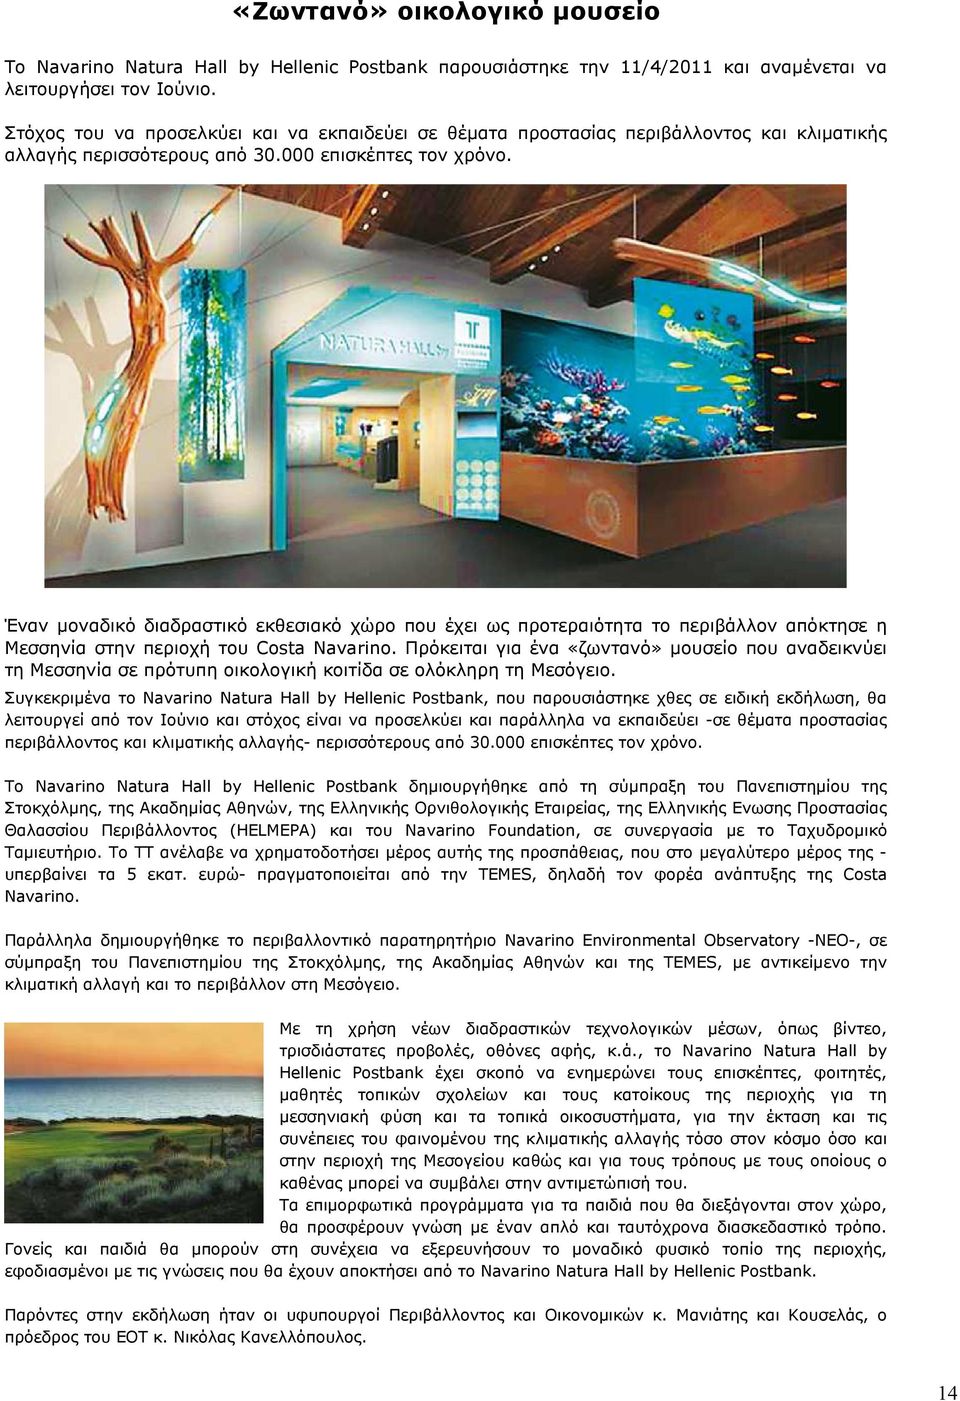 Έναν µοναδικό διαδραστικό εκθεσιακό χώρο που έχει ως προτεραιότητα το περιβάλλον απόκτησε η Μεσσηνία στην περιοχή του Cοsta Navarino.